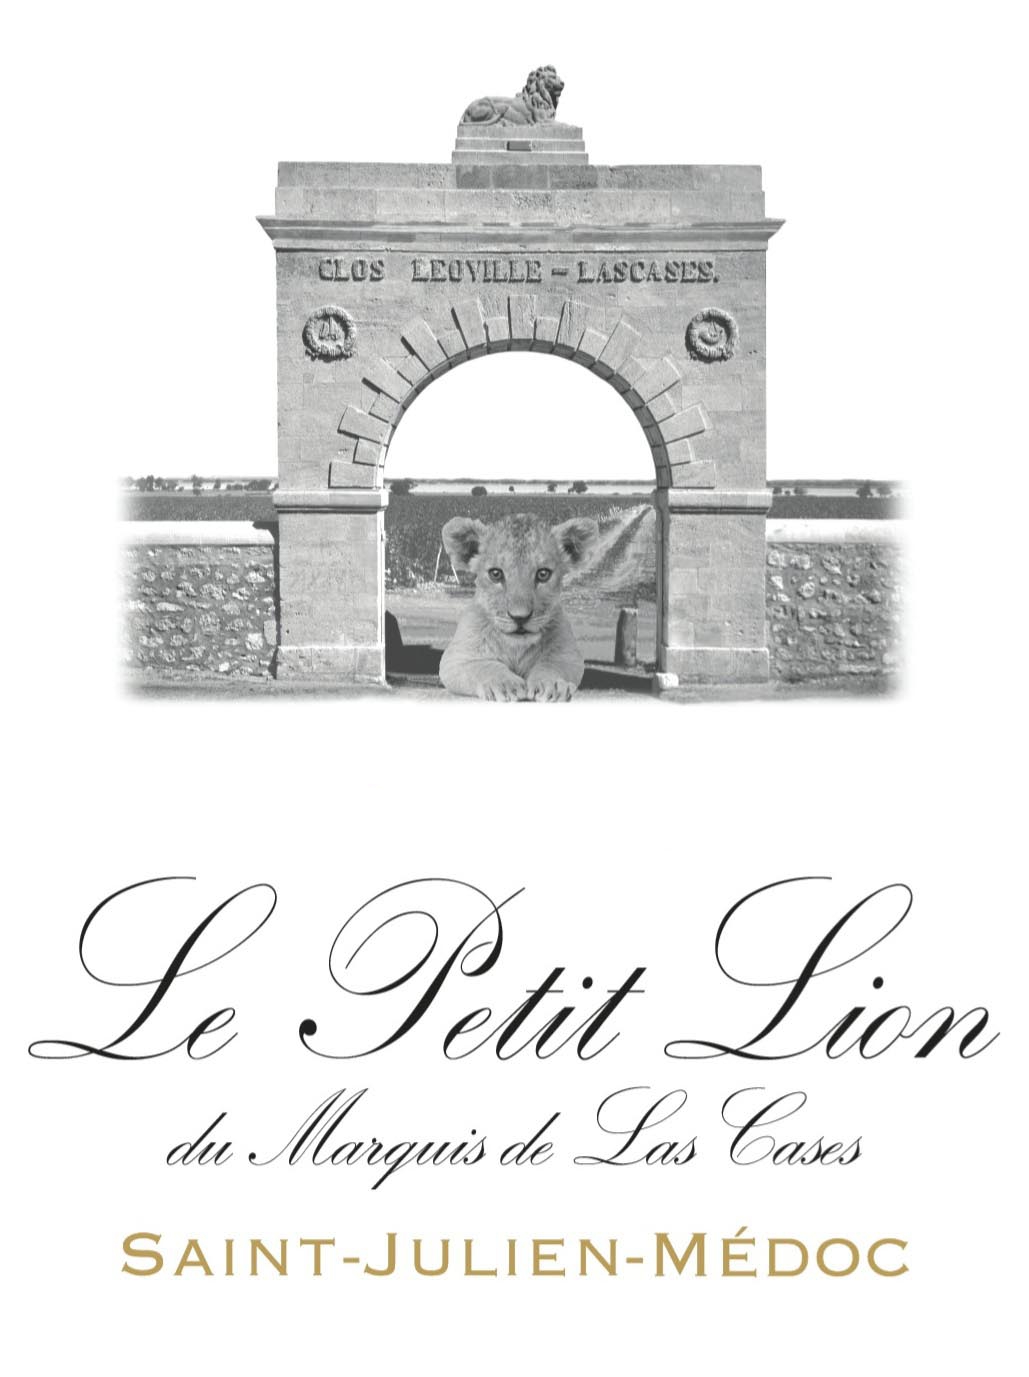 Le Petit Lion du Marquis de Leoville Las Cases label